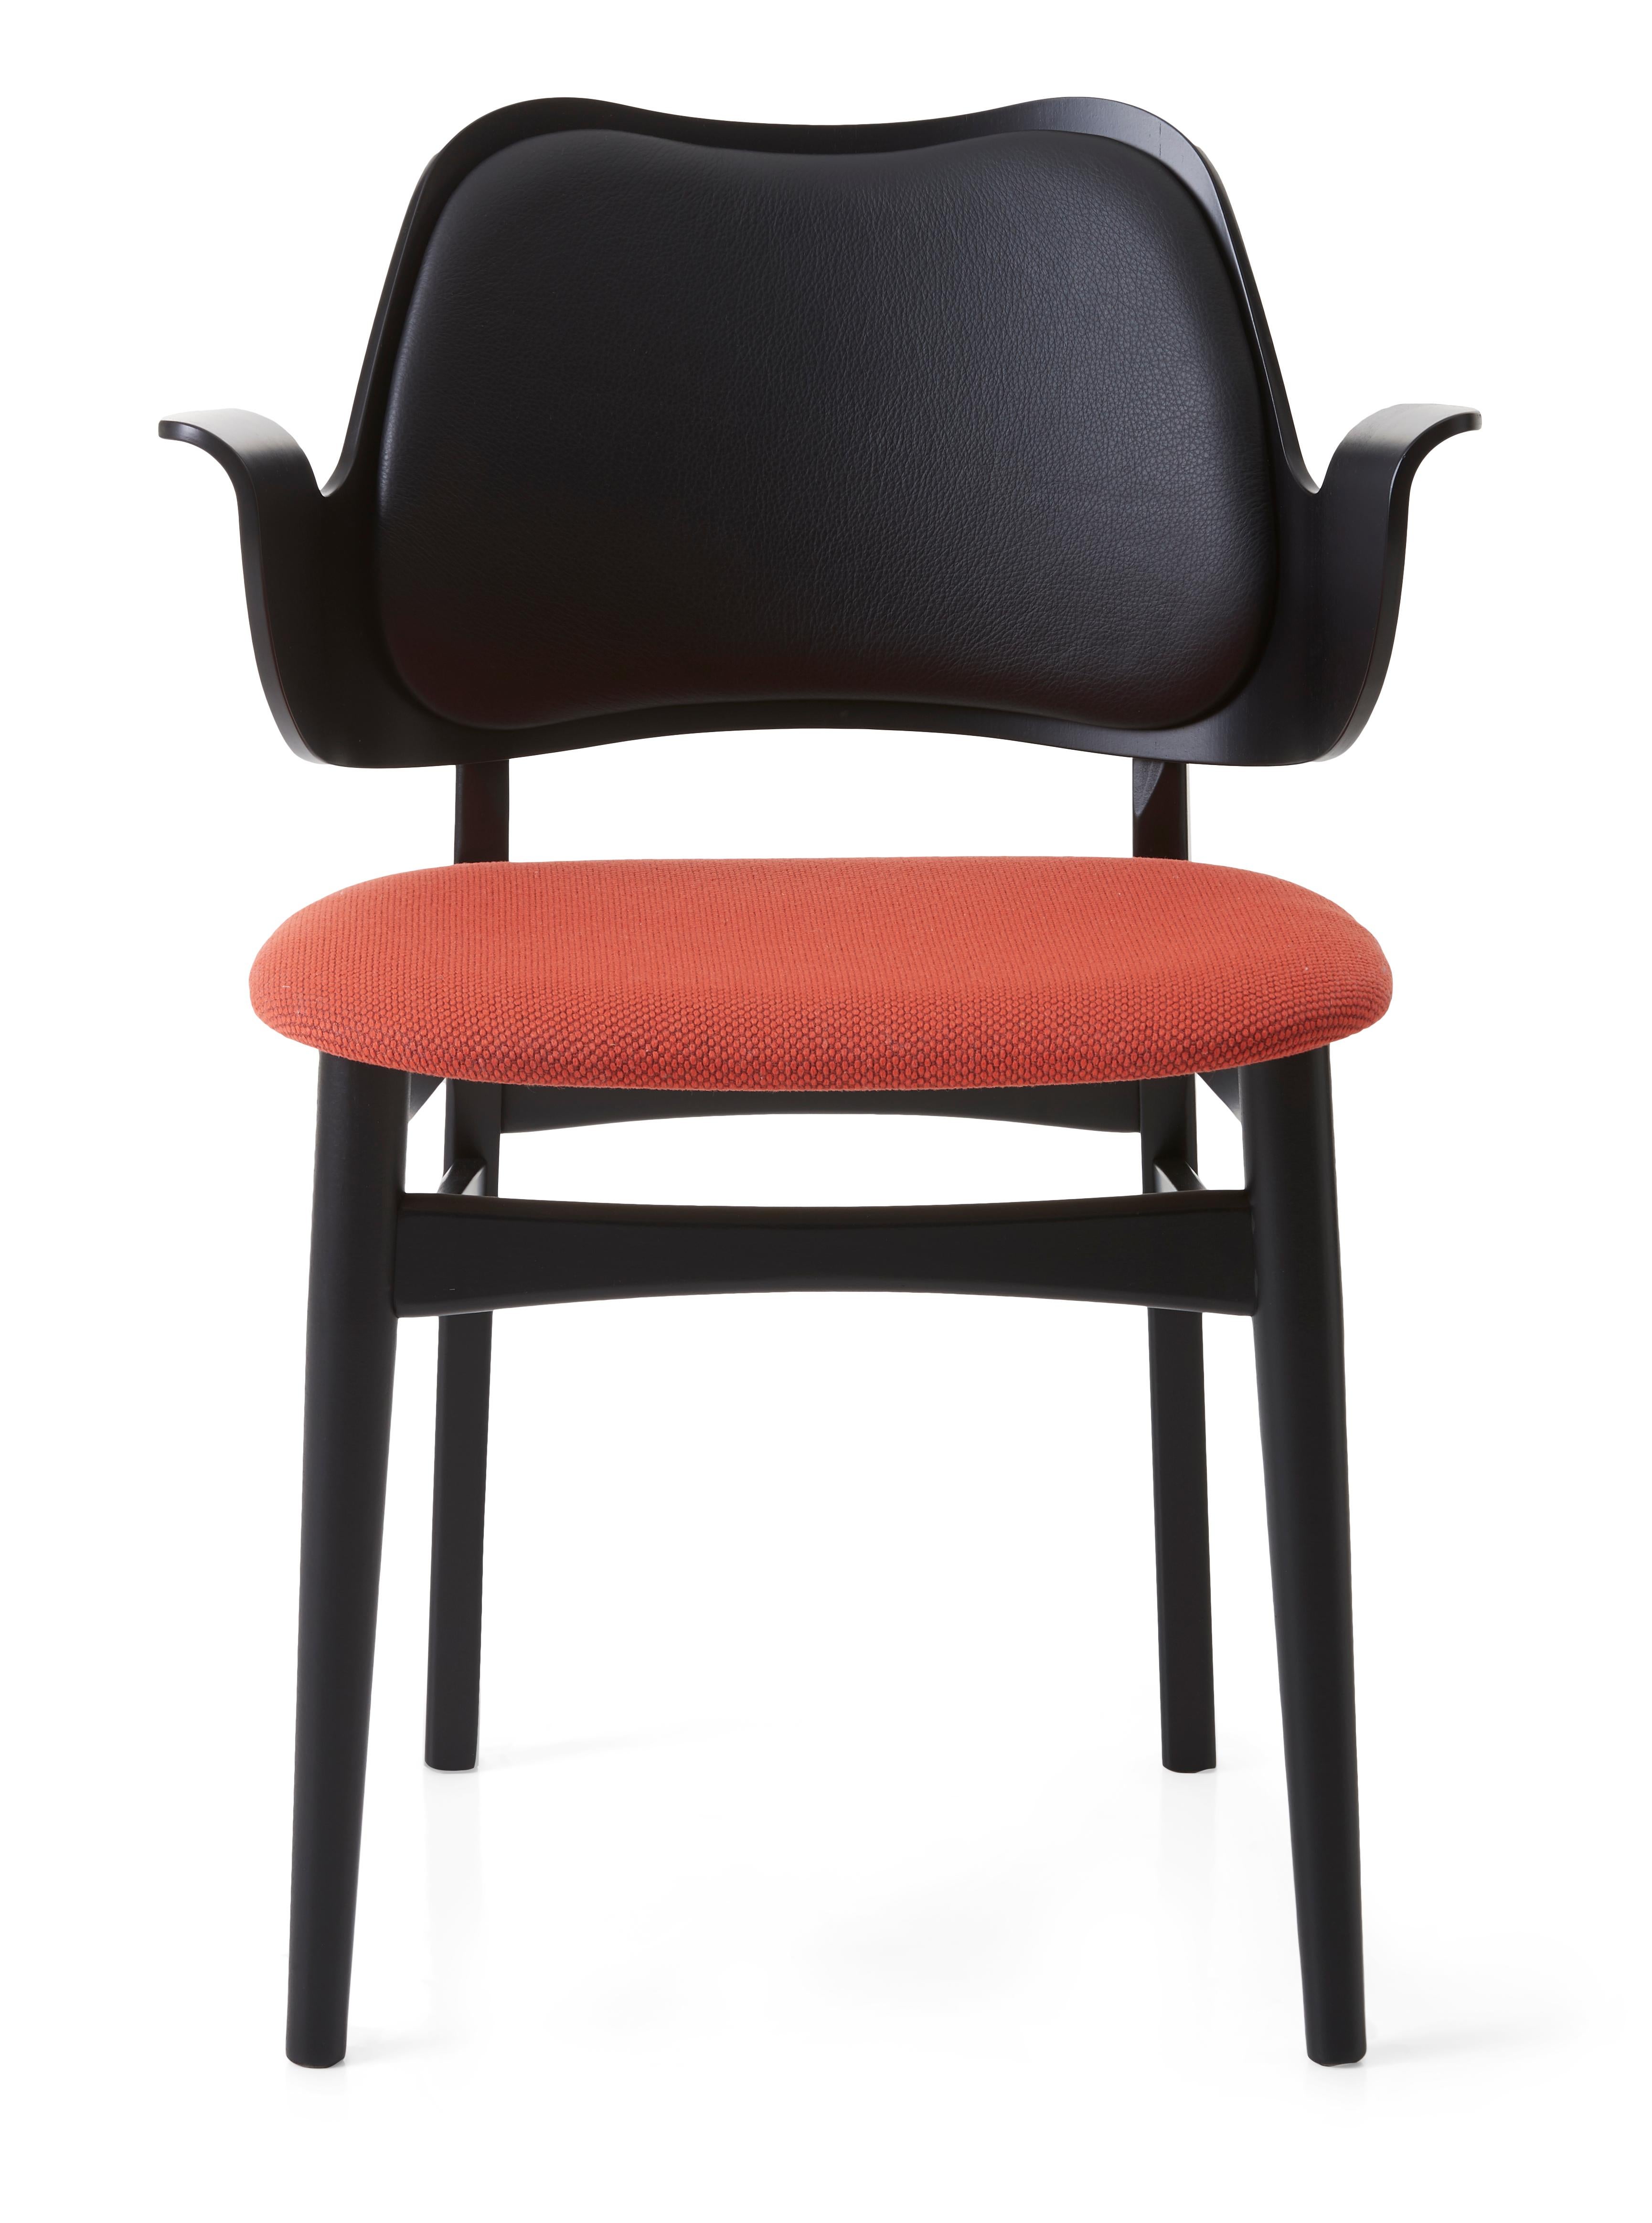 Gesture stuhl schwarz buche rostig rosa schwarz leder by Warm Nordic
Abmessungen: T56 x B53 x H 80 cm.
MATERIAL: Eiche massiv Teak oder weiß geölt, Buche massiv schwarz lackiert, Sitz und Rückenlehne furniert, Polsterung aus Textil und